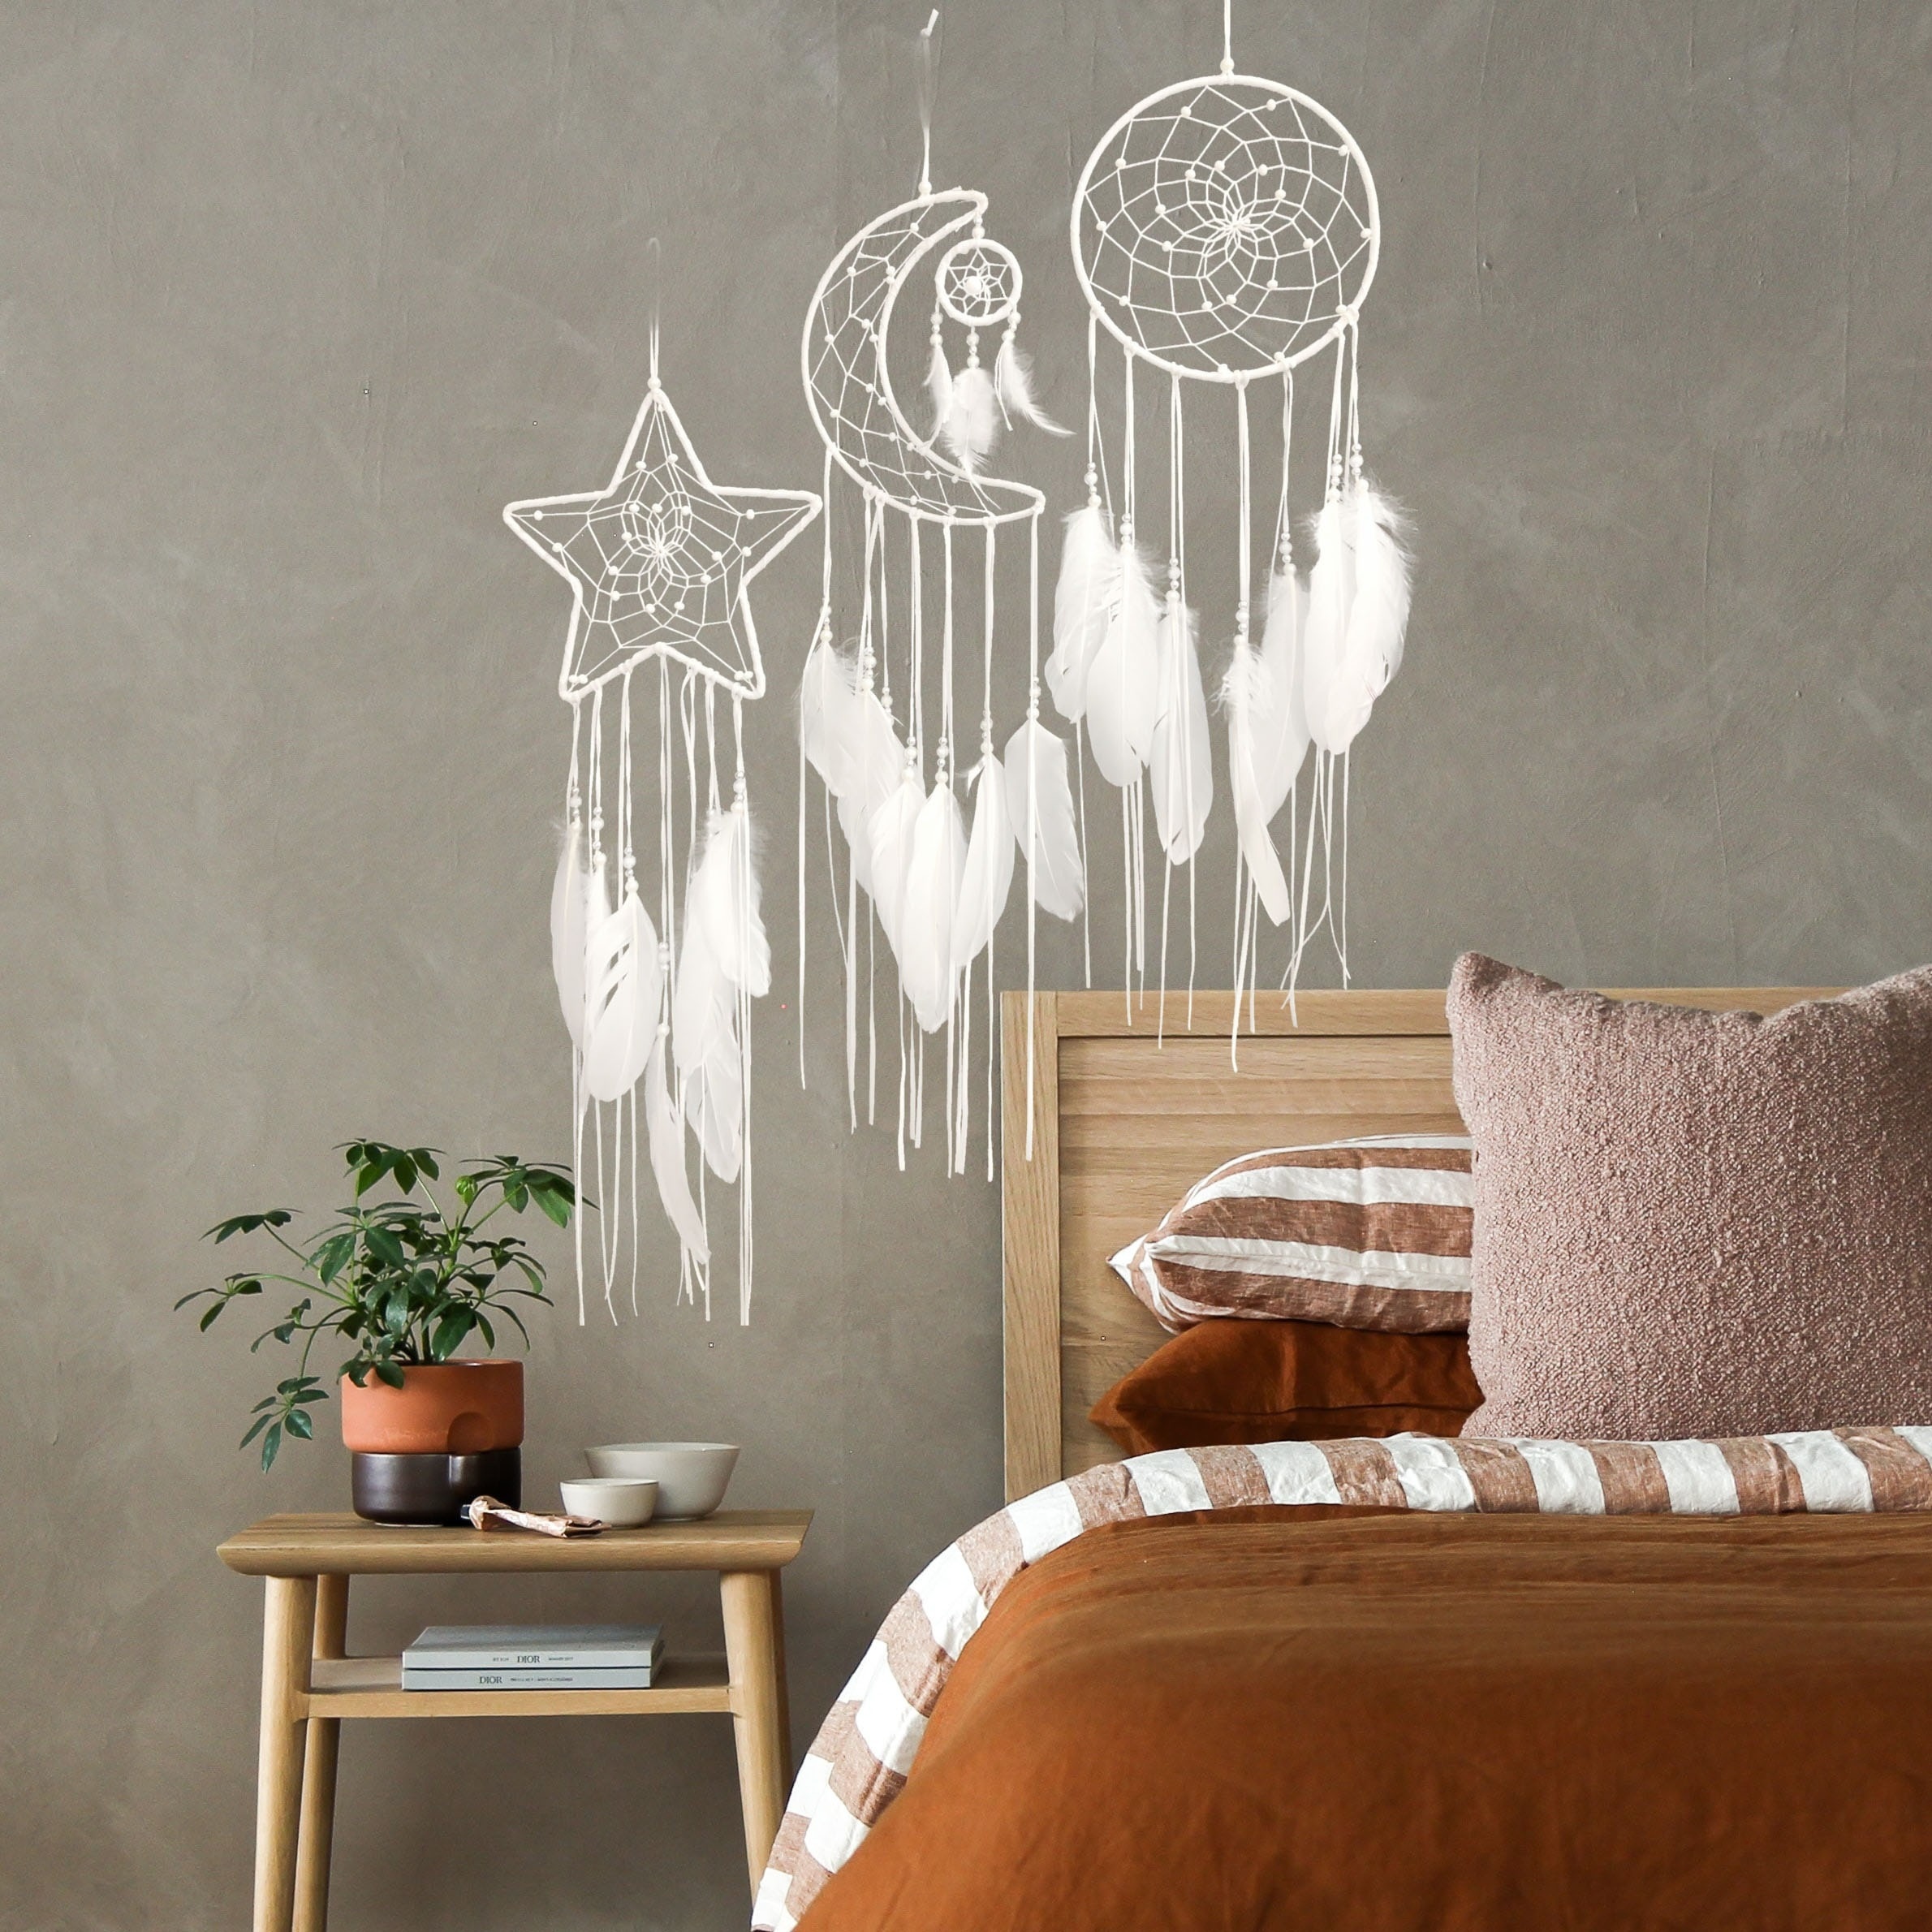 Atrapasueños grande con luna y estrellas colgando sobre la cama, plumas,  atrapasueños para el hogar, decoración para colgar en la pared, plumas